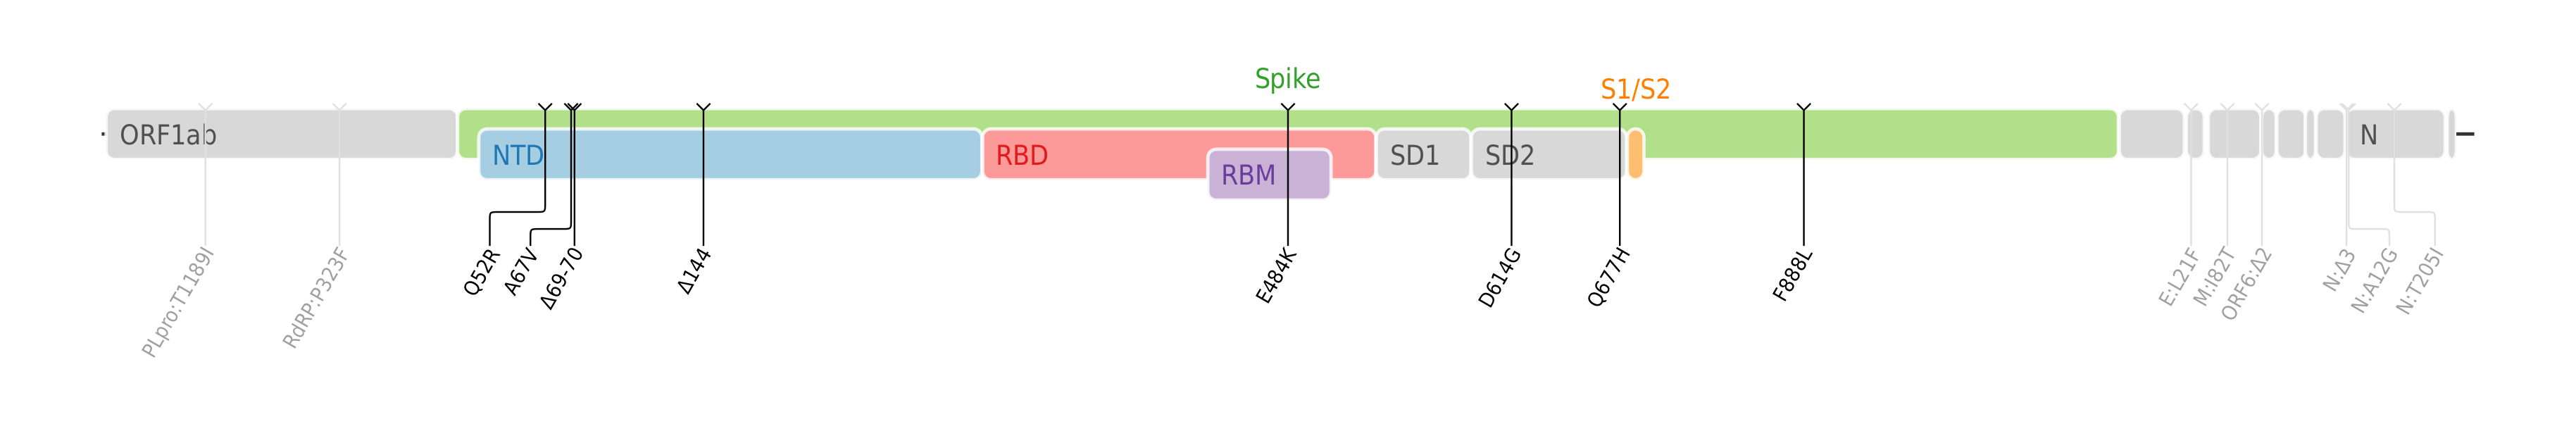 スパイクタンパク質に焦点を当てたSARS-CoV-2のゲノムマップ上にプロットされたイータ株のアミノ酸変異[9]。